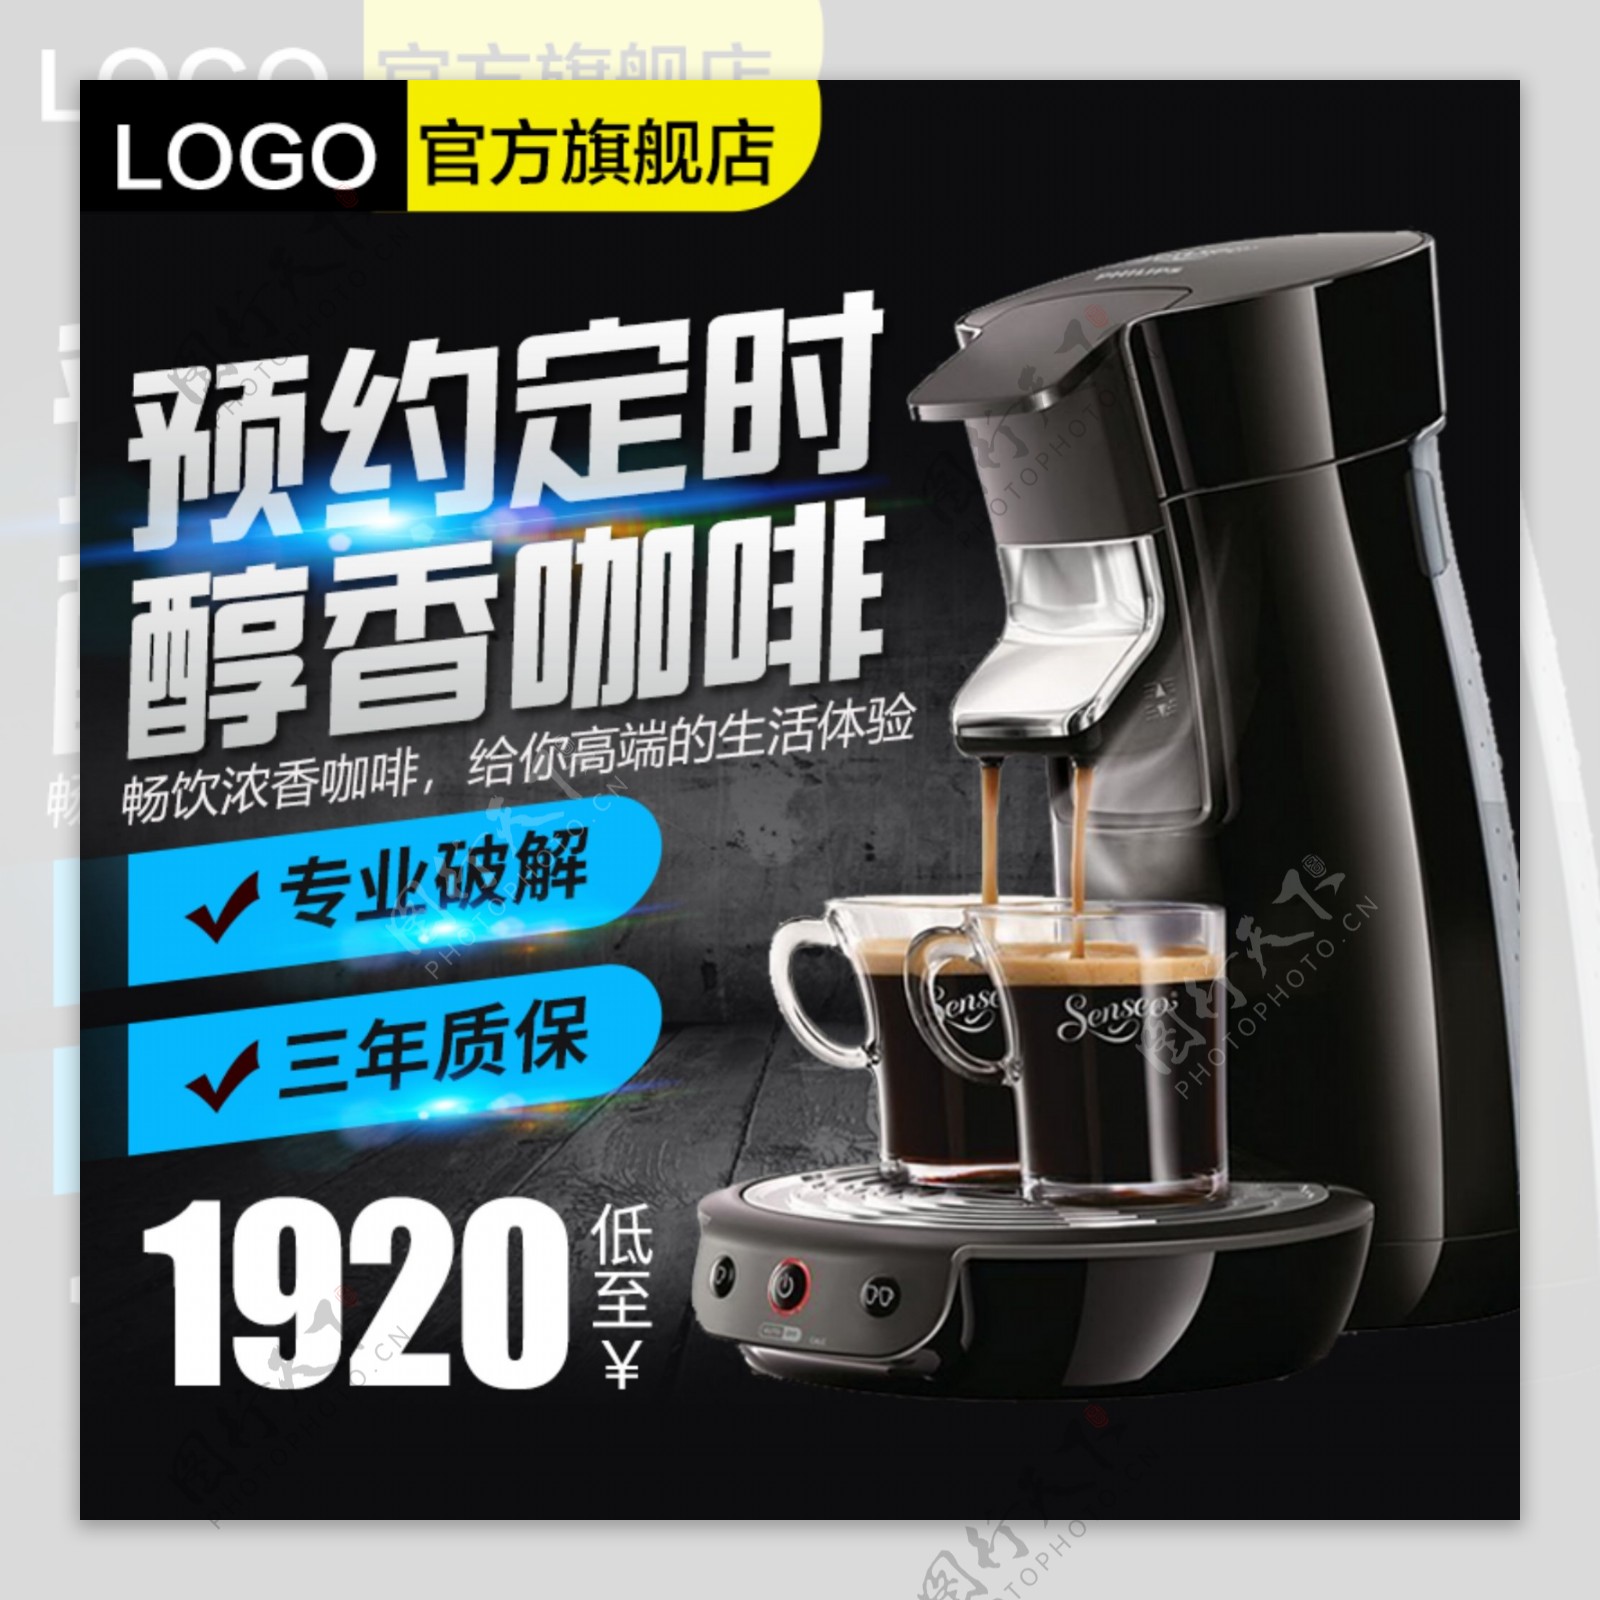 醇香咖啡机科技风直通车模板